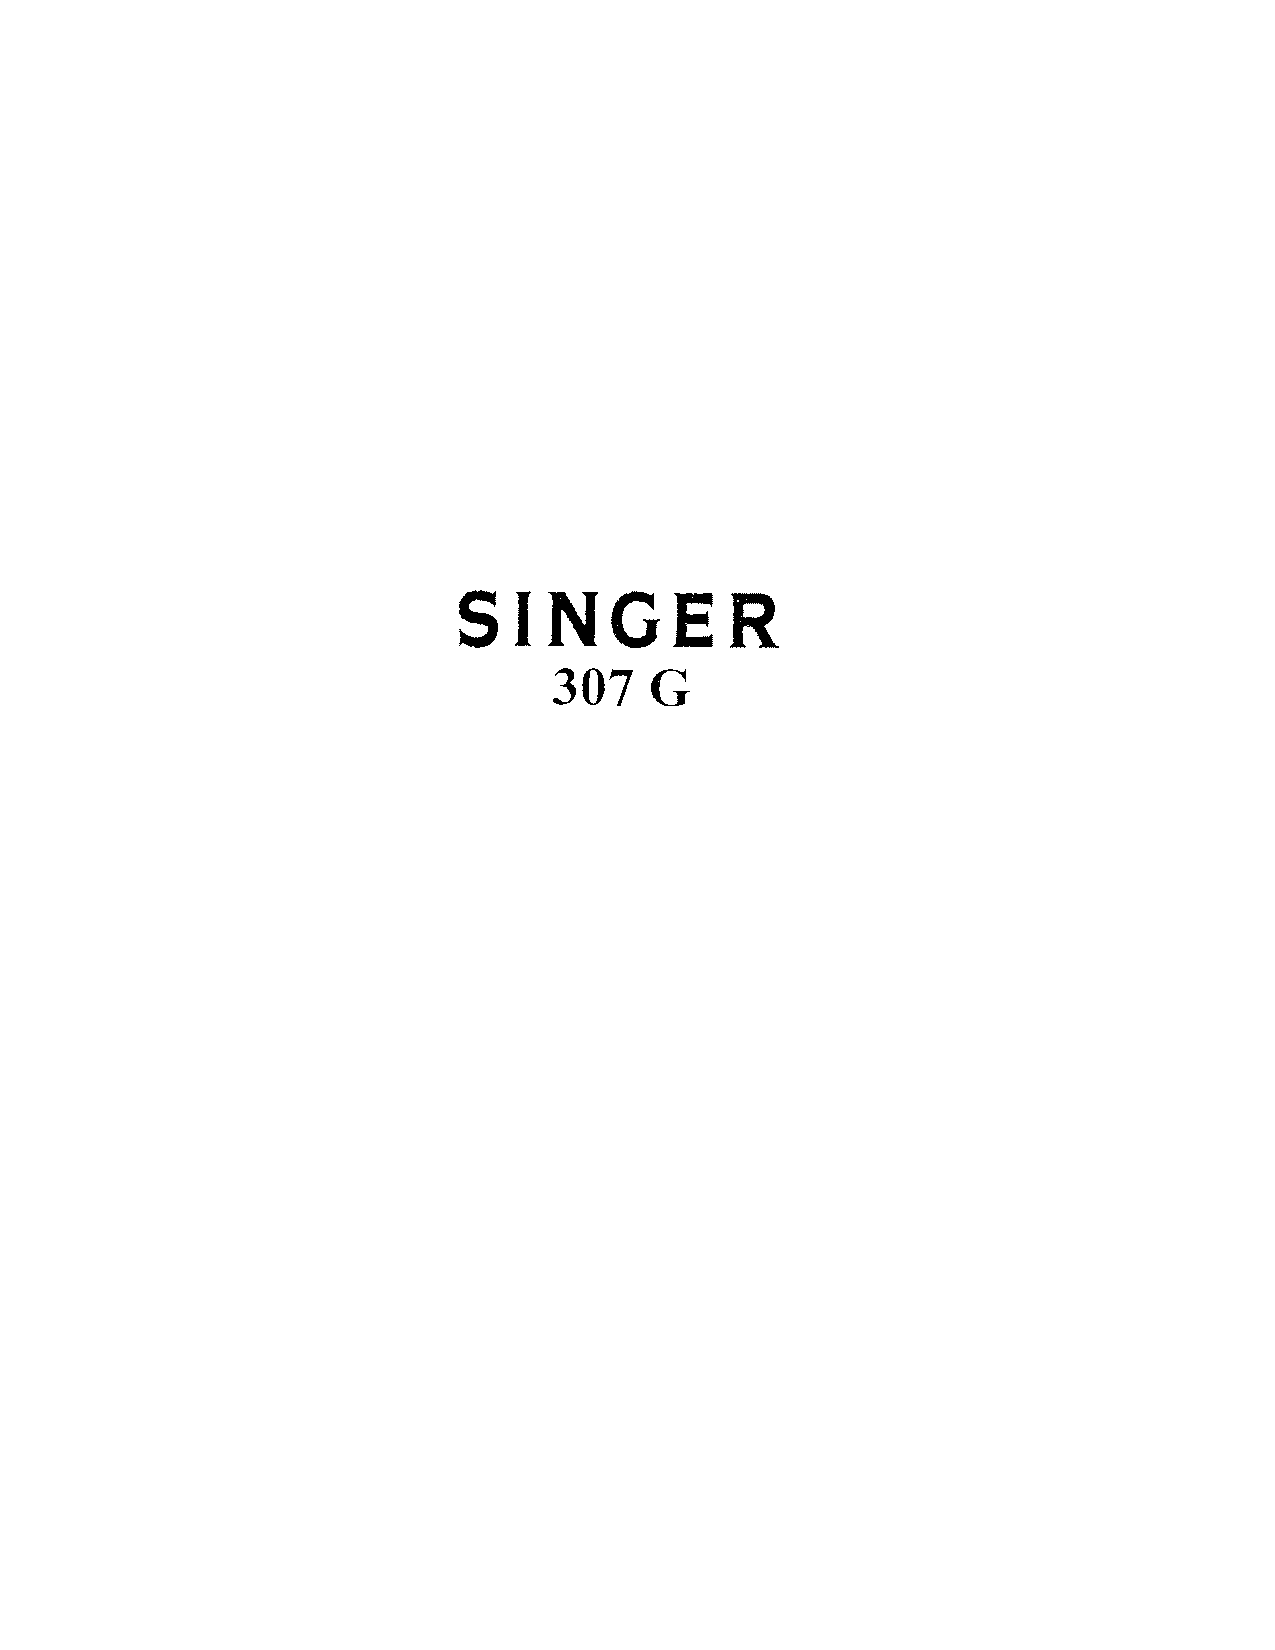 Singer 307G User Manual